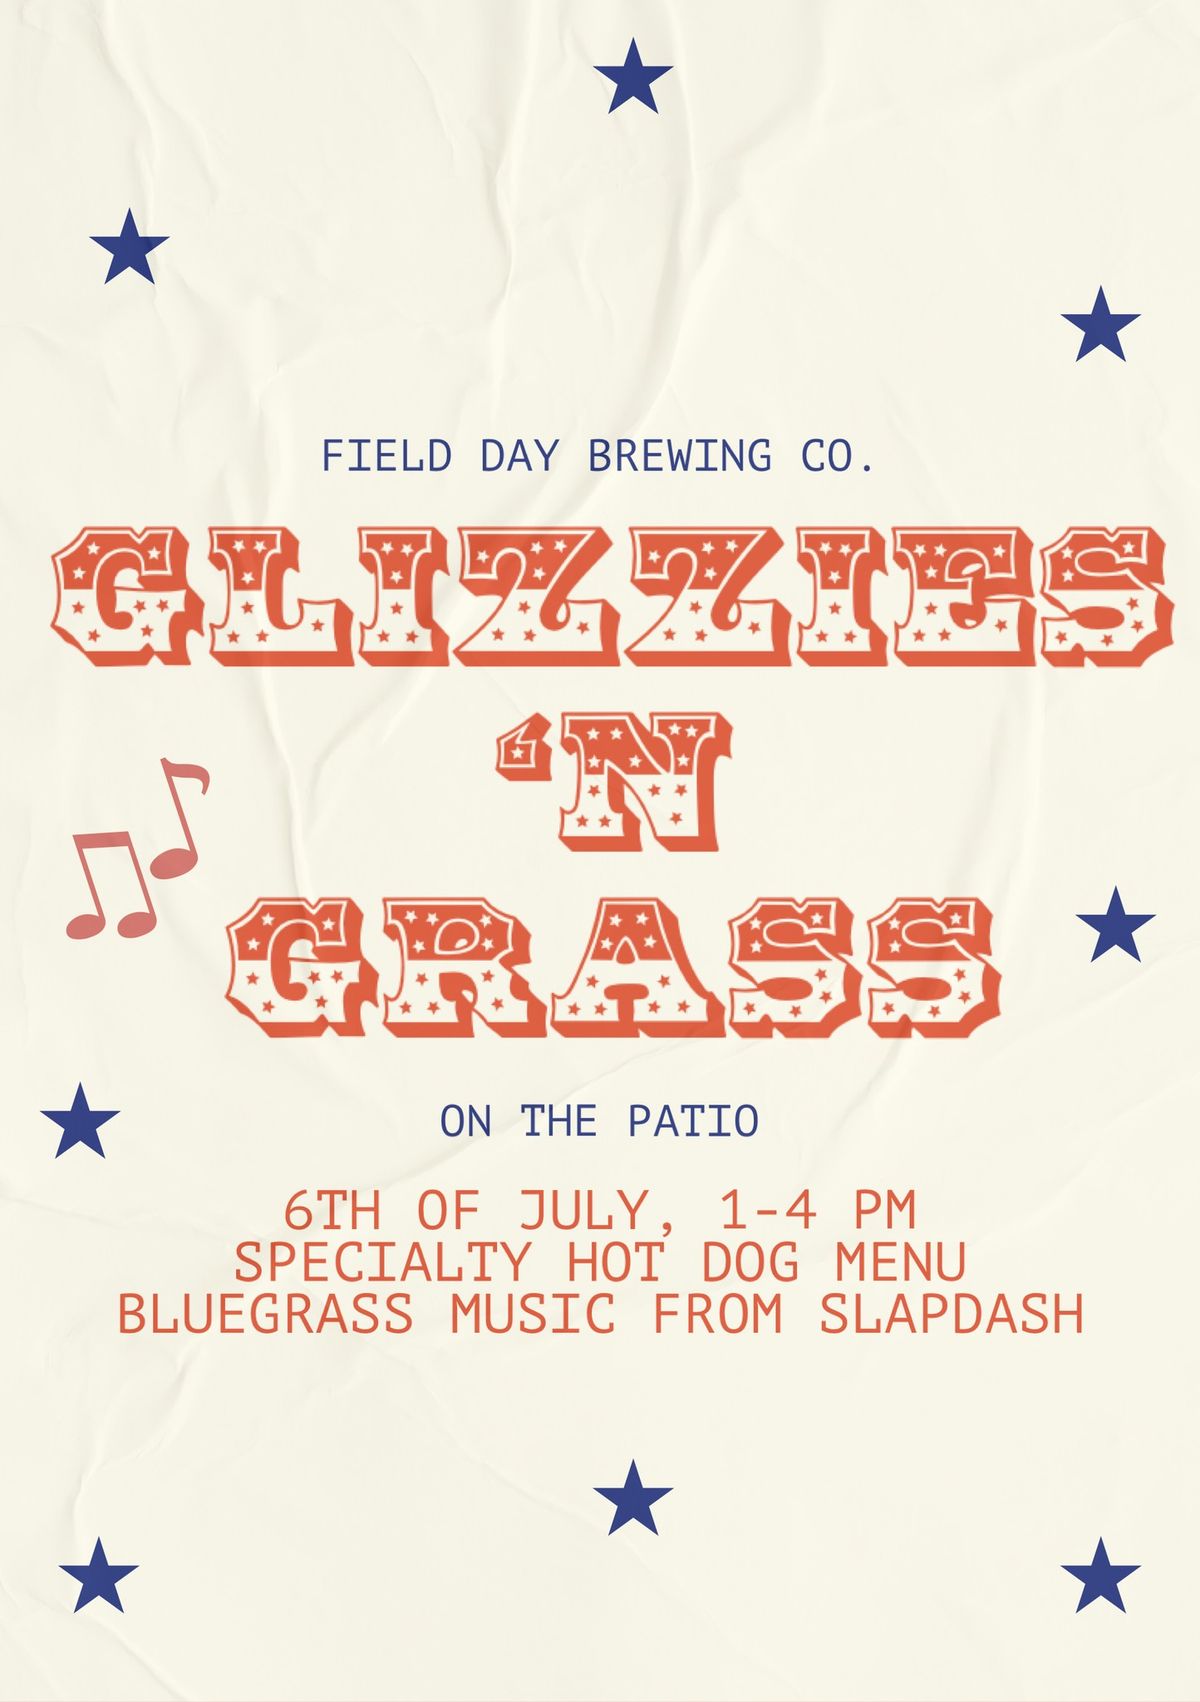 Glizzies 'n Grass with Slapdash Bluegrass